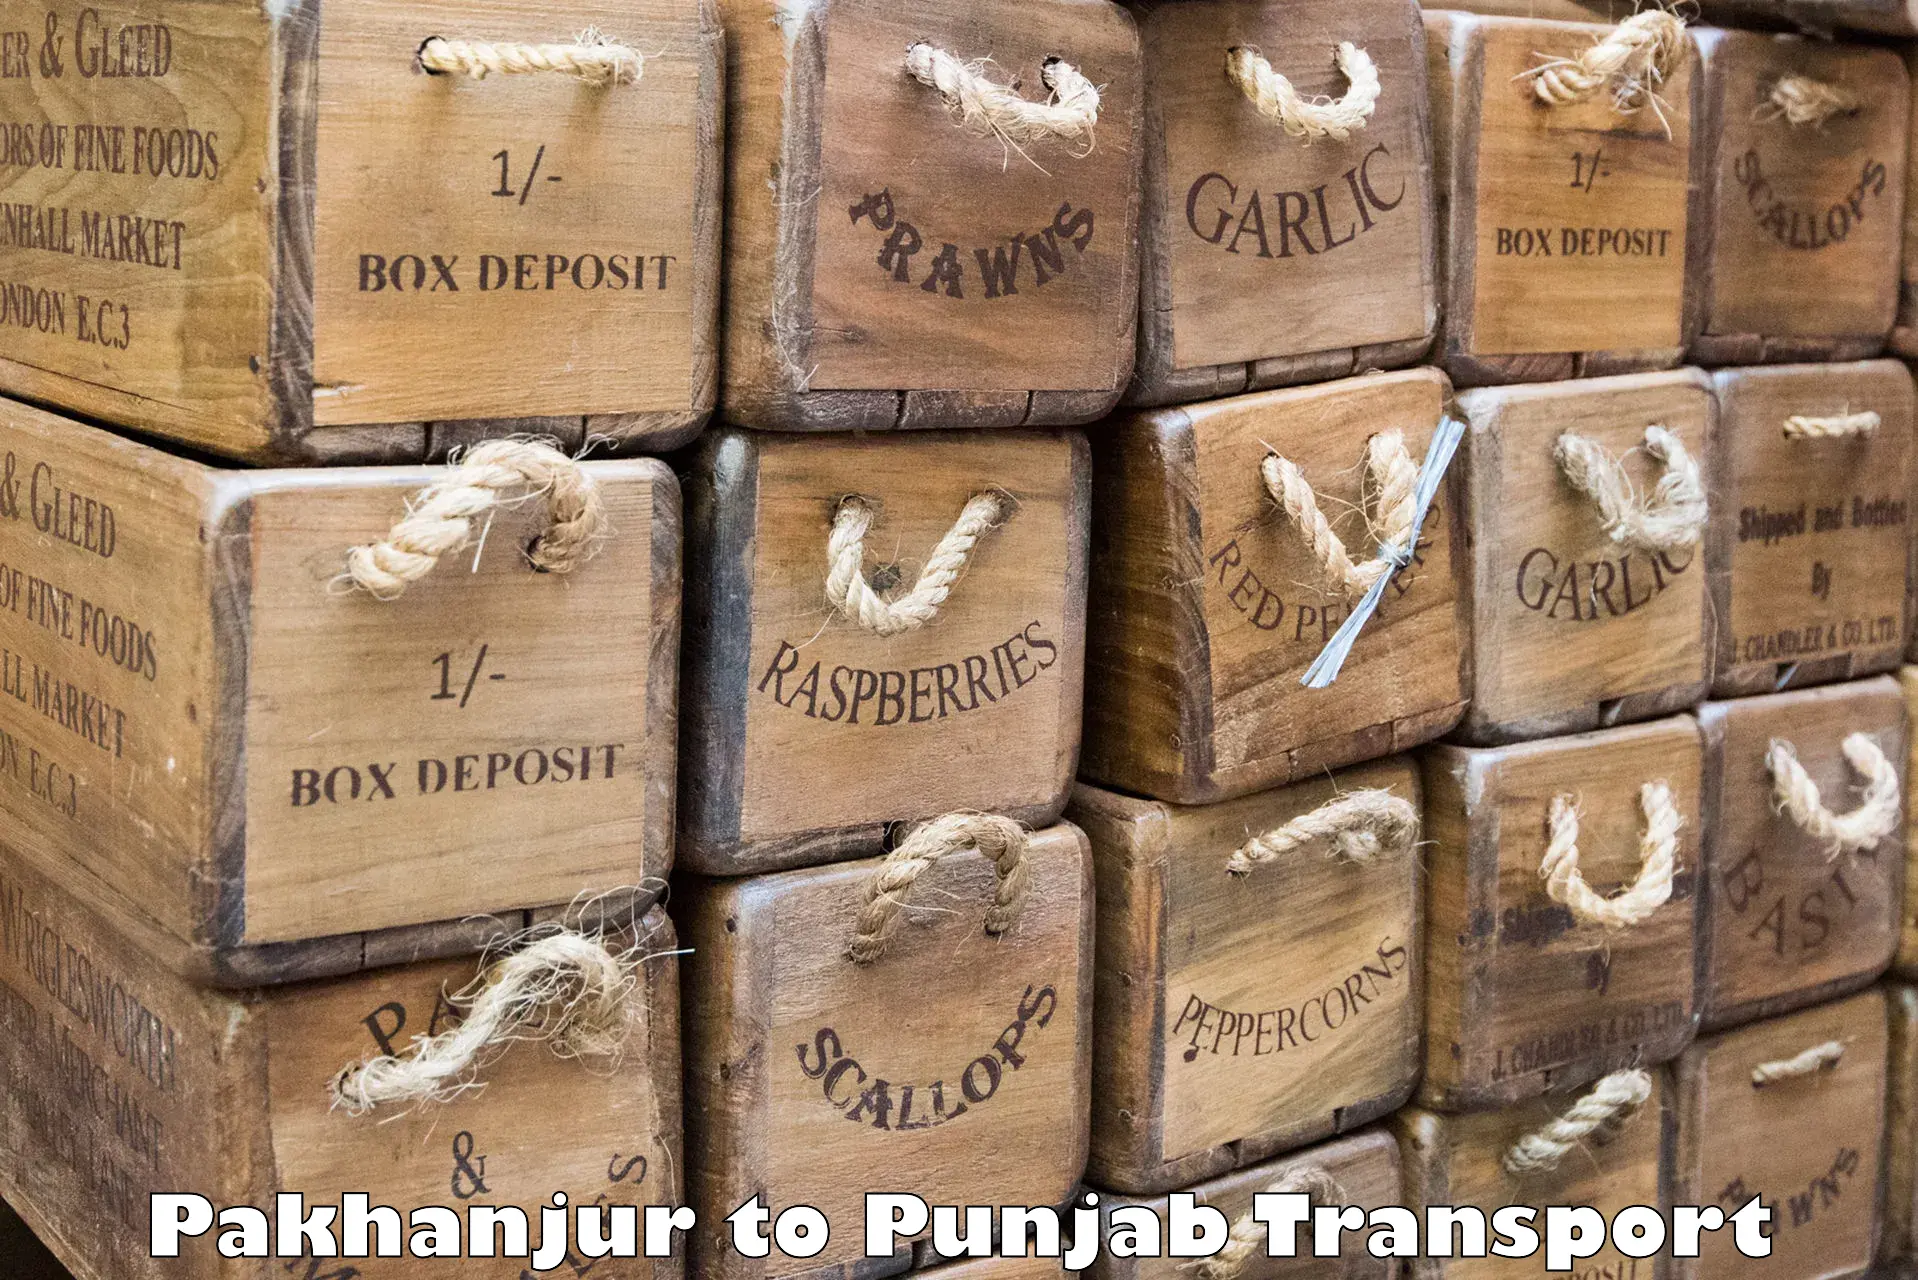 Air freight transport services Pakhanjur to Patti Tarn Tara